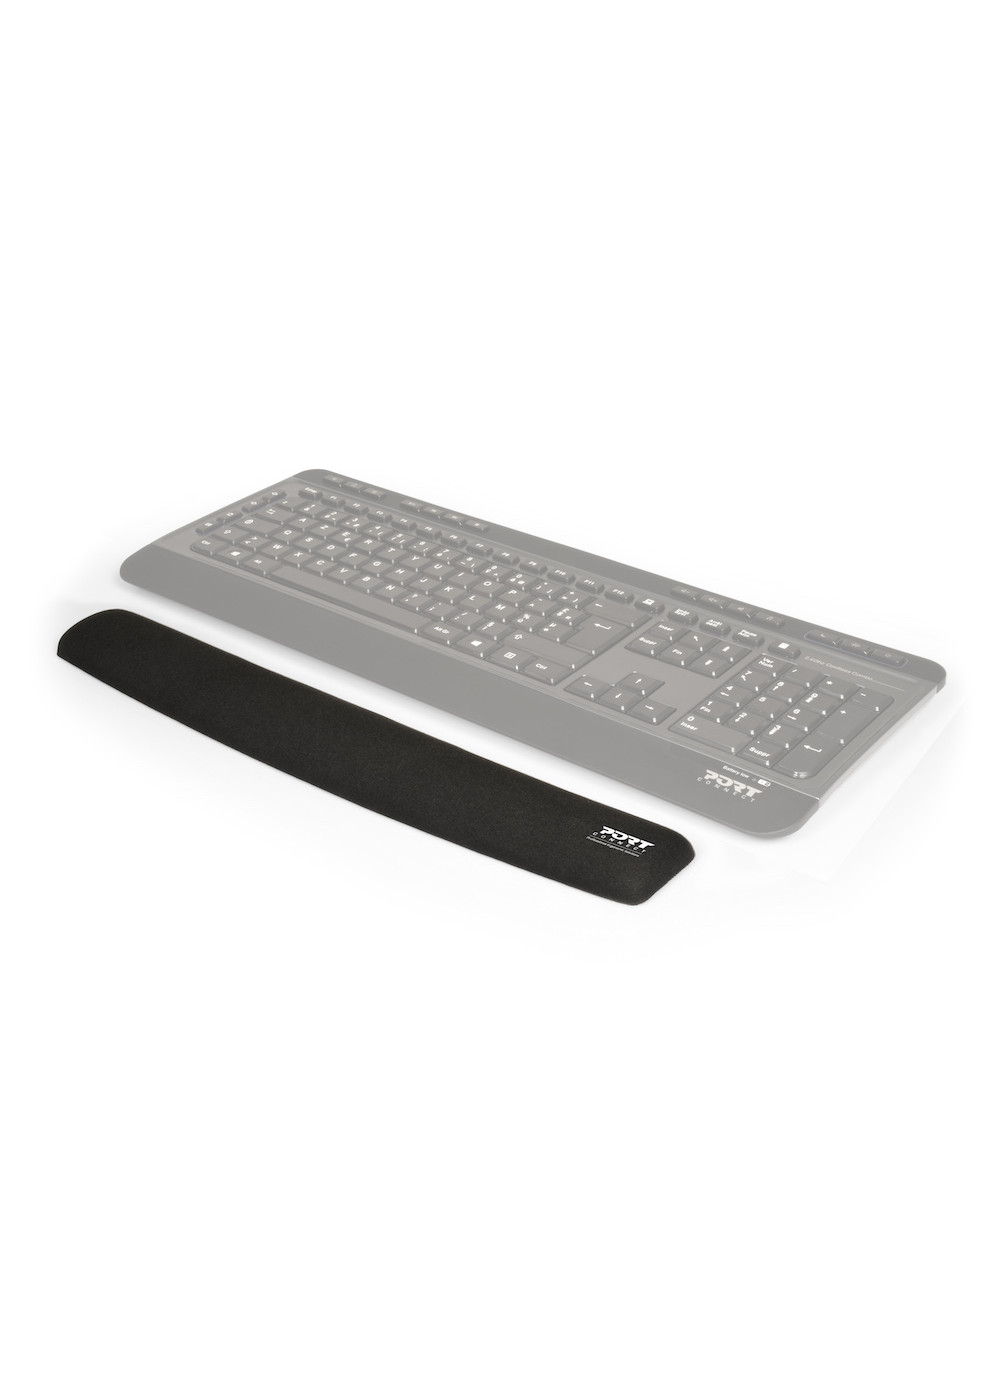 Port Connect Repose-poignets ergonomique pour clavier PC noir